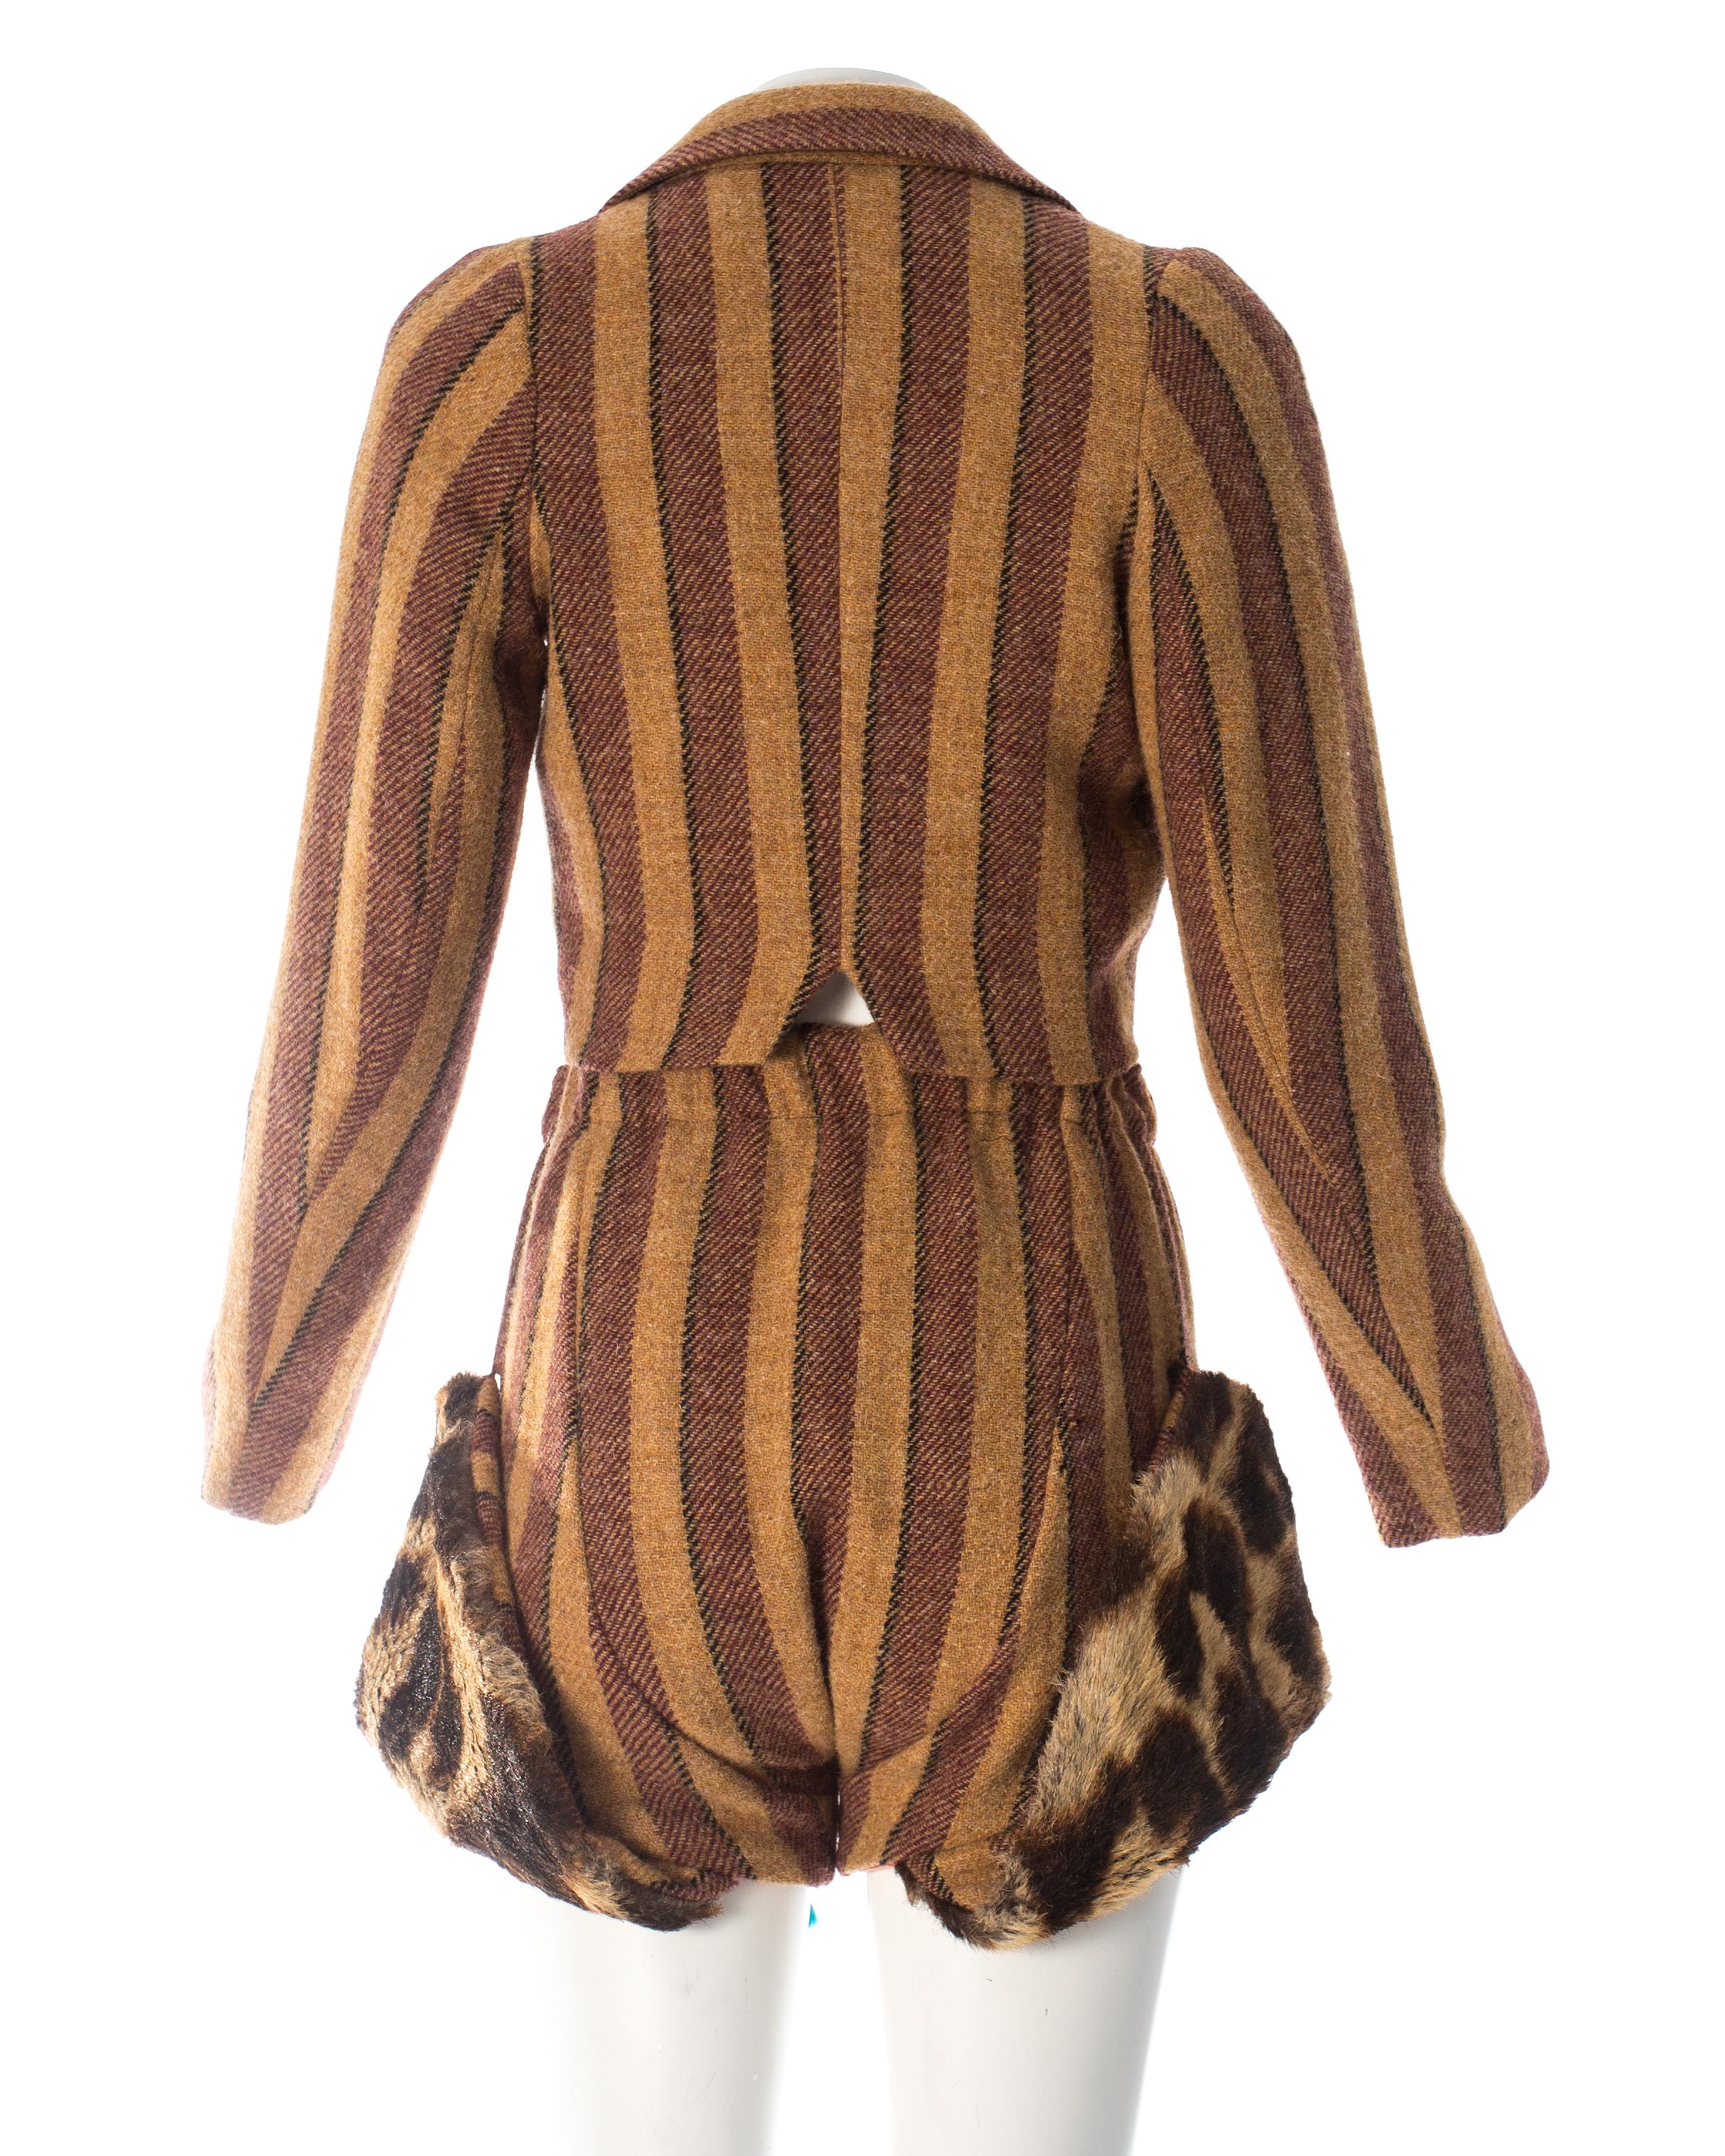 Vivivnne Westwood striped herringbone tweed short suit, fw 1990 For Sale 3